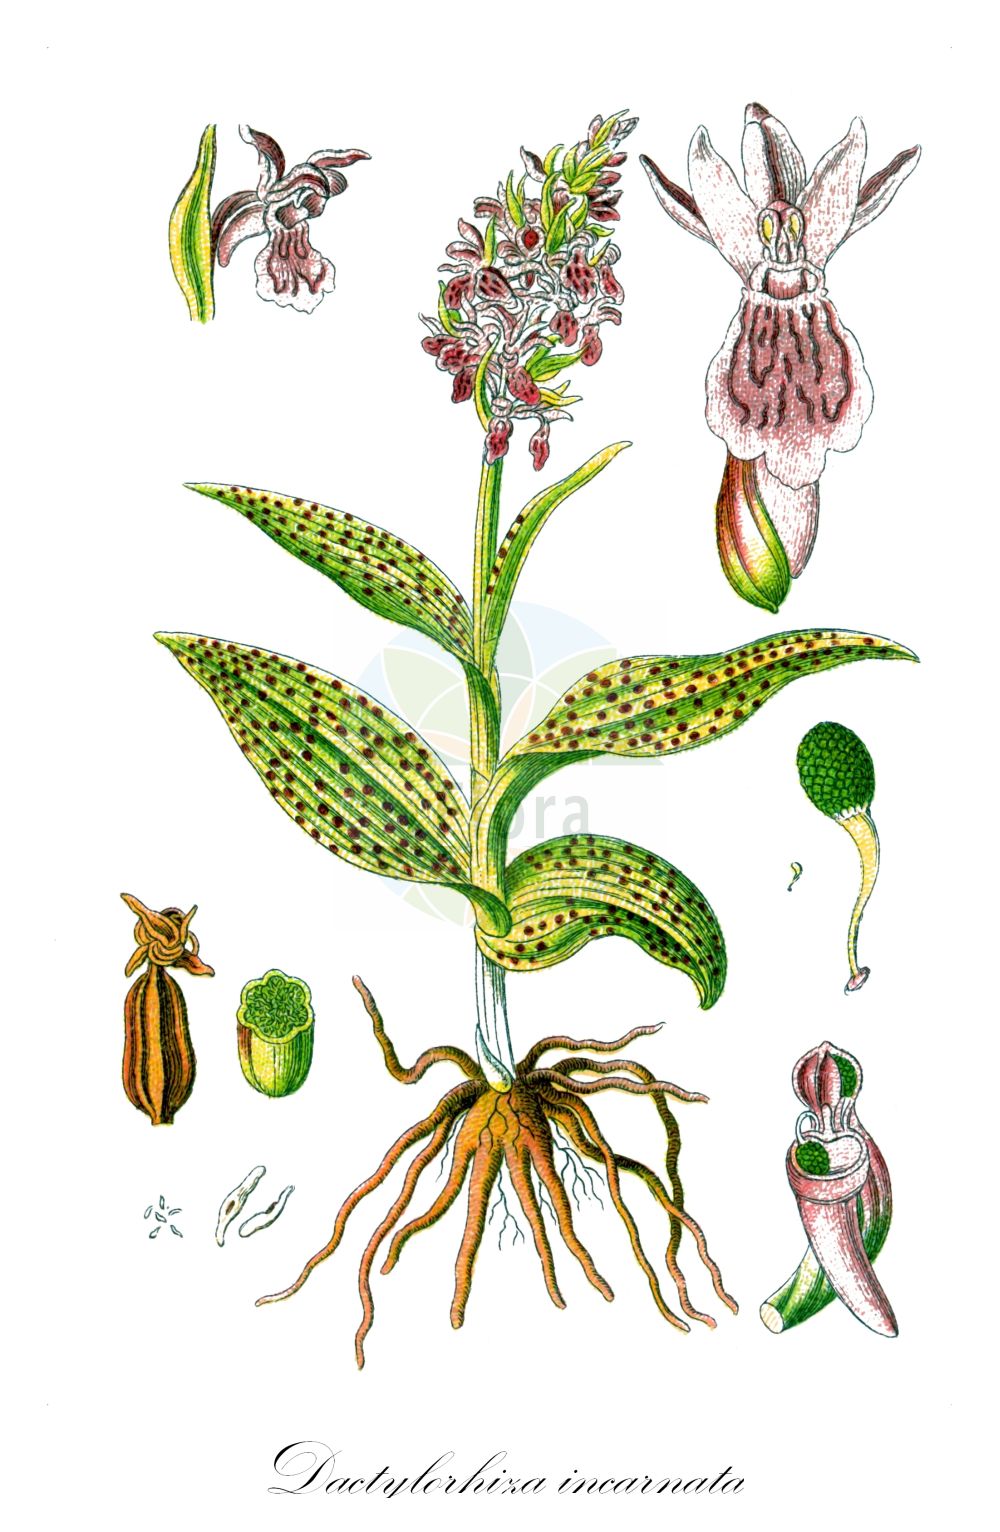 Historische Abbildung von Dactylorhiza incarnata (Fleischrotes Knabenkraut - Early Marsh-orchid). Das Bild zeigt Blatt, Bluete, Frucht und Same. ---- Historical Drawing of Dactylorhiza incarnata (Fleischrotes Knabenkraut - Early Marsh-orchid). The image is showing leaf, flower, fruit and seed.(Dactylorhiza incarnata,Fleischrotes Knabenkraut,Early Marsh-orchid,Dactylorhiza incarnata,Orchis mixta var. incantata,Fleischrotes Knabenkraut,Blassgelbe Kuckucksblume,Blutrote Kuckucksblume,Blutrotes Knabenkraut,Fleischrote Kuckucksblume,Steifblaettriges Knabenkraut,Early Marsh-orchid,Marsh Orchid,Dactylorhiza,Knabenkraut,Keyflower,Orchidaceae,Knabenkrautgewächse,Orchid family,Blatt,Bluete,Frucht,Same,leaf,flower,fruit,seed,Sturm (1796f))